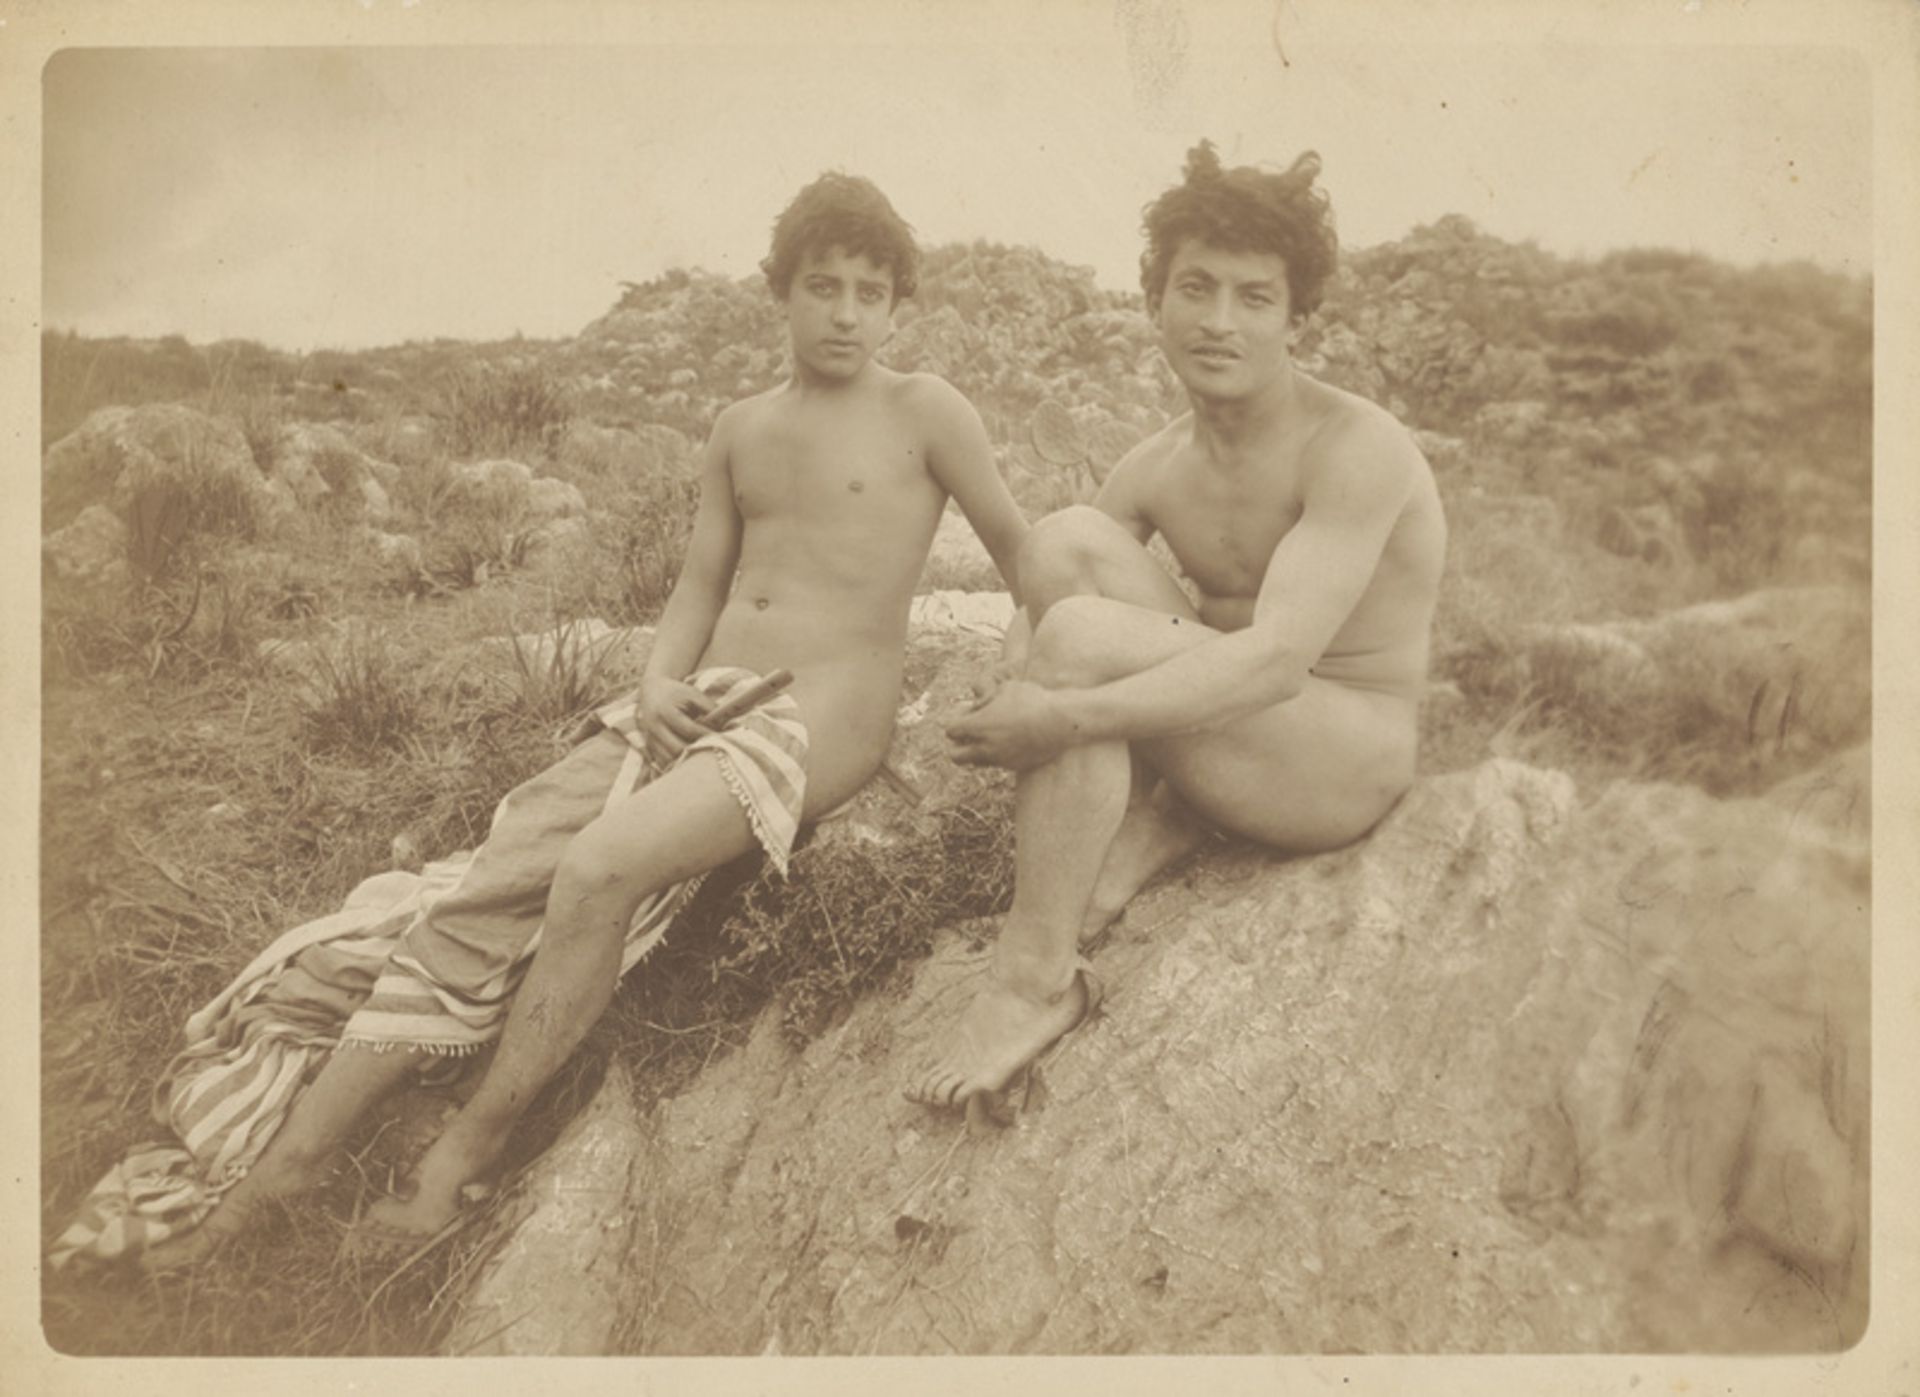 Gloeden, Wilhelm von: Two male nudes on rocks